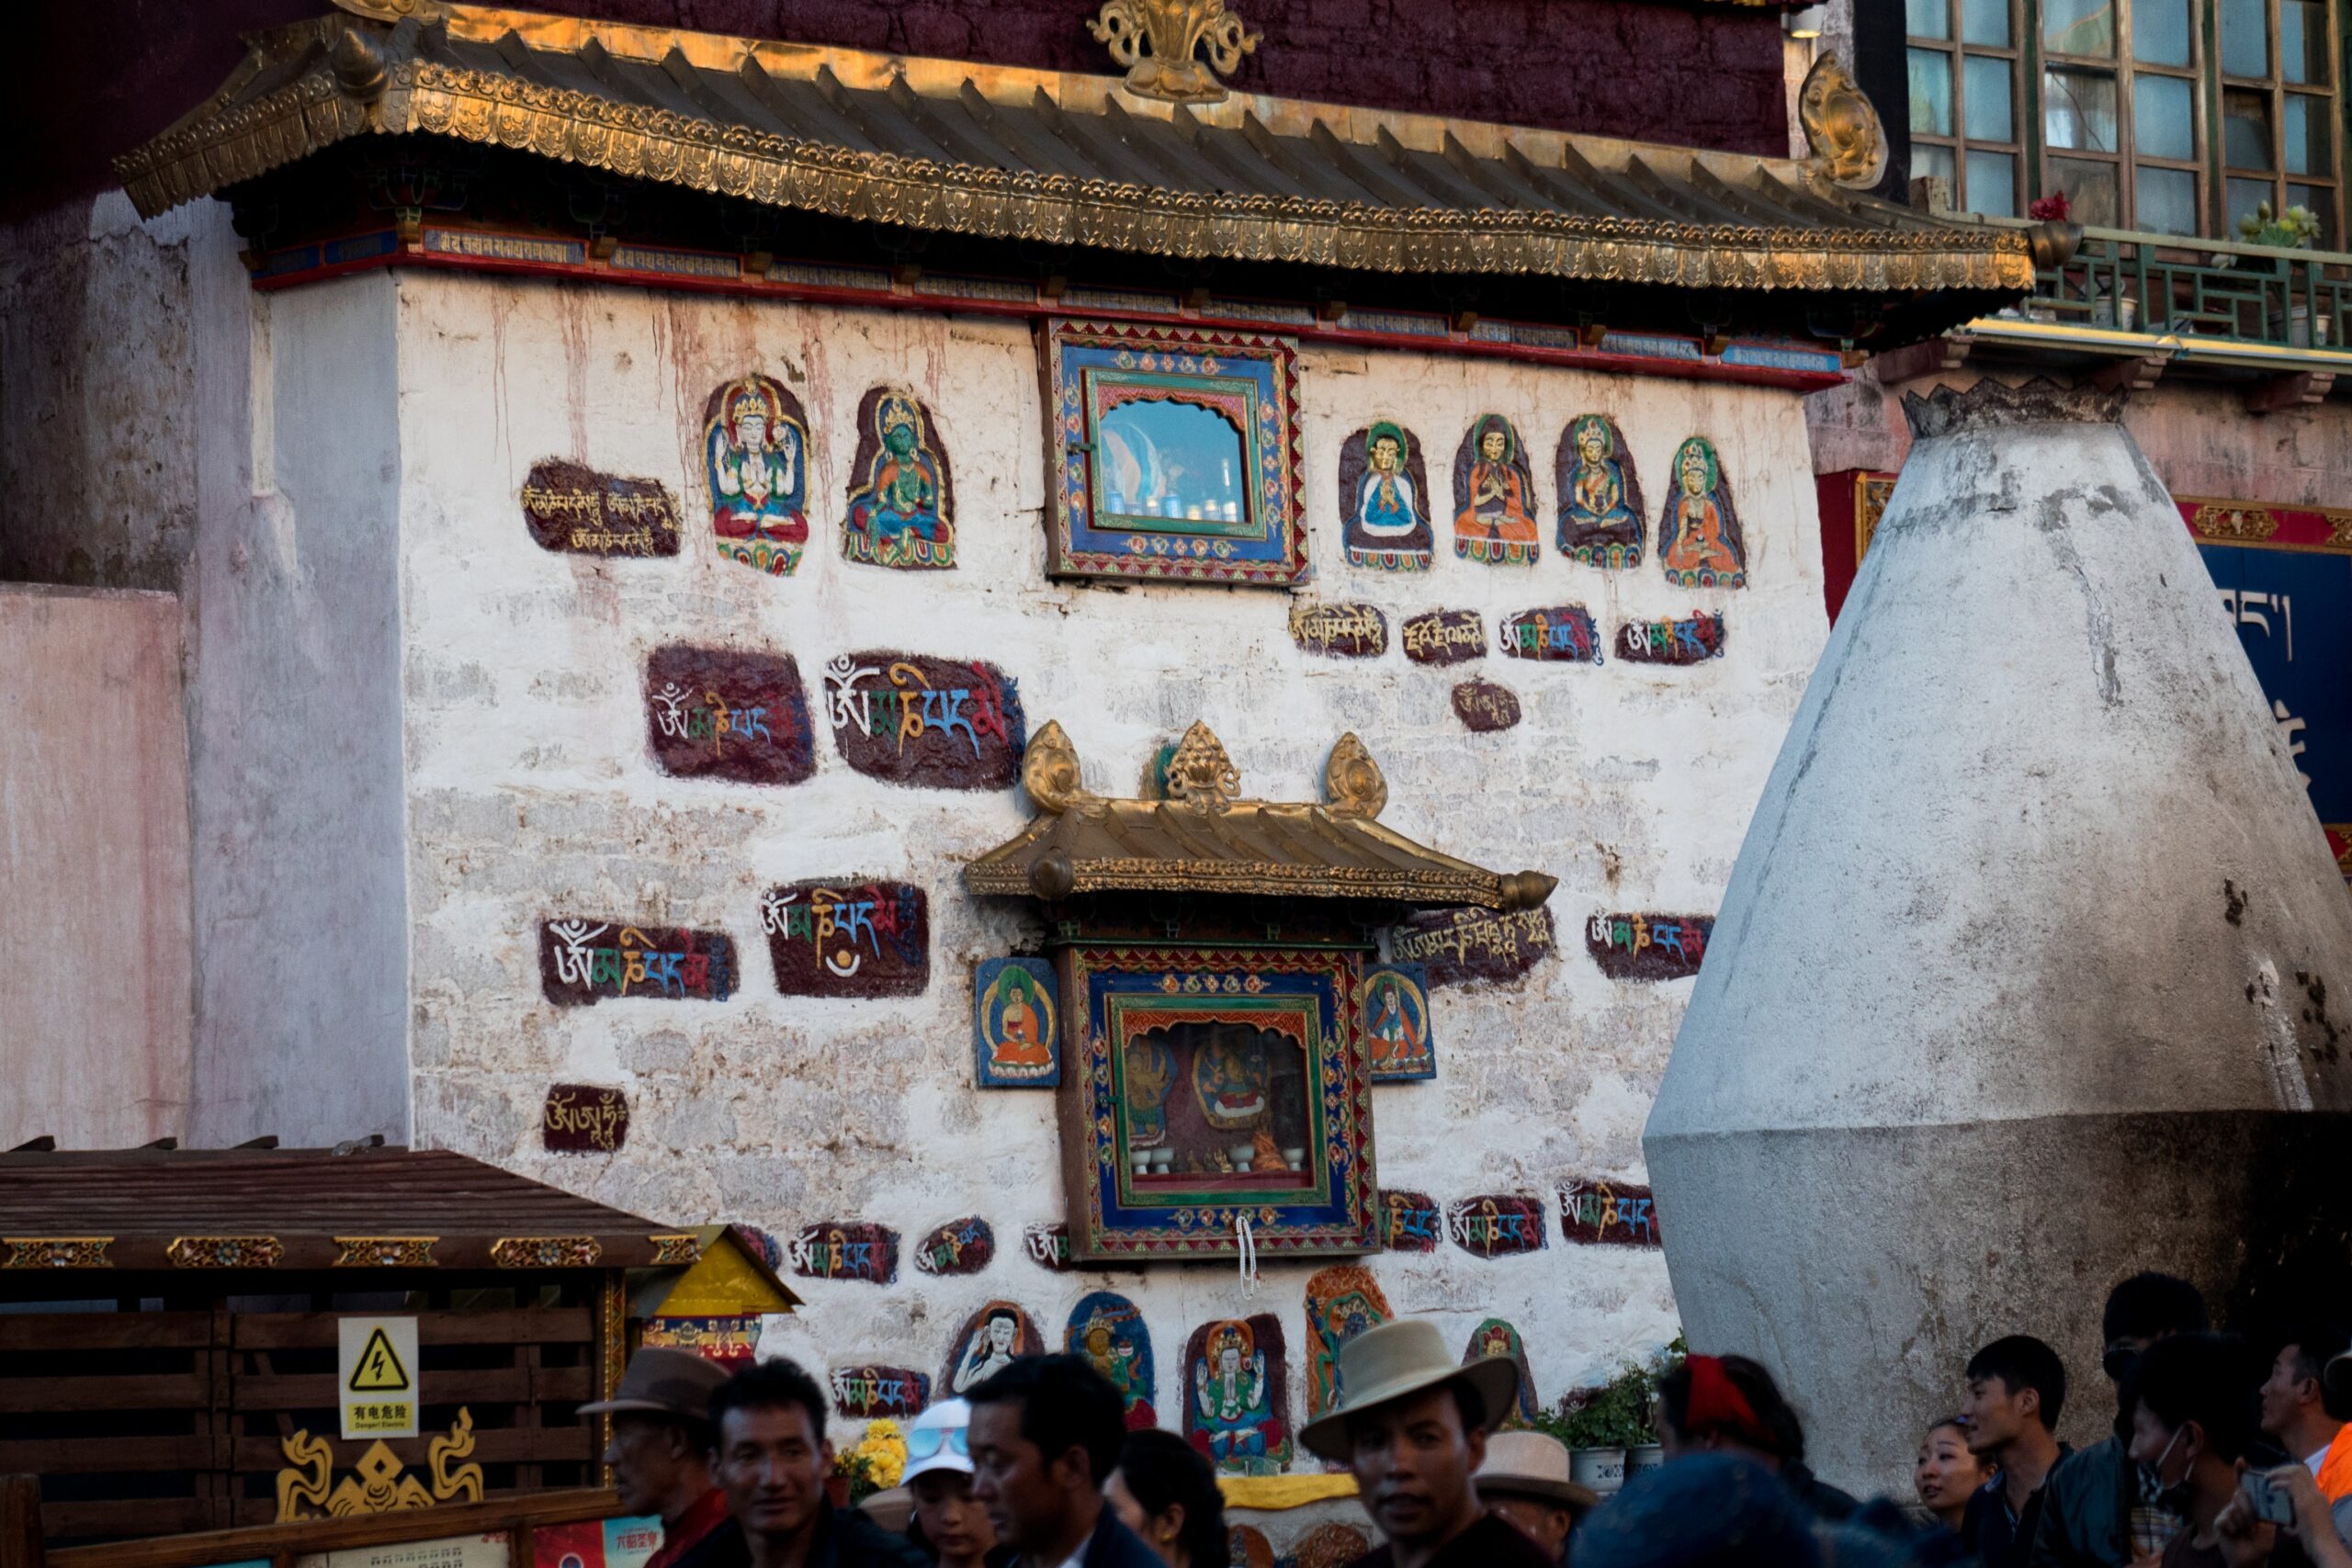 7 Days Lhasa Tour